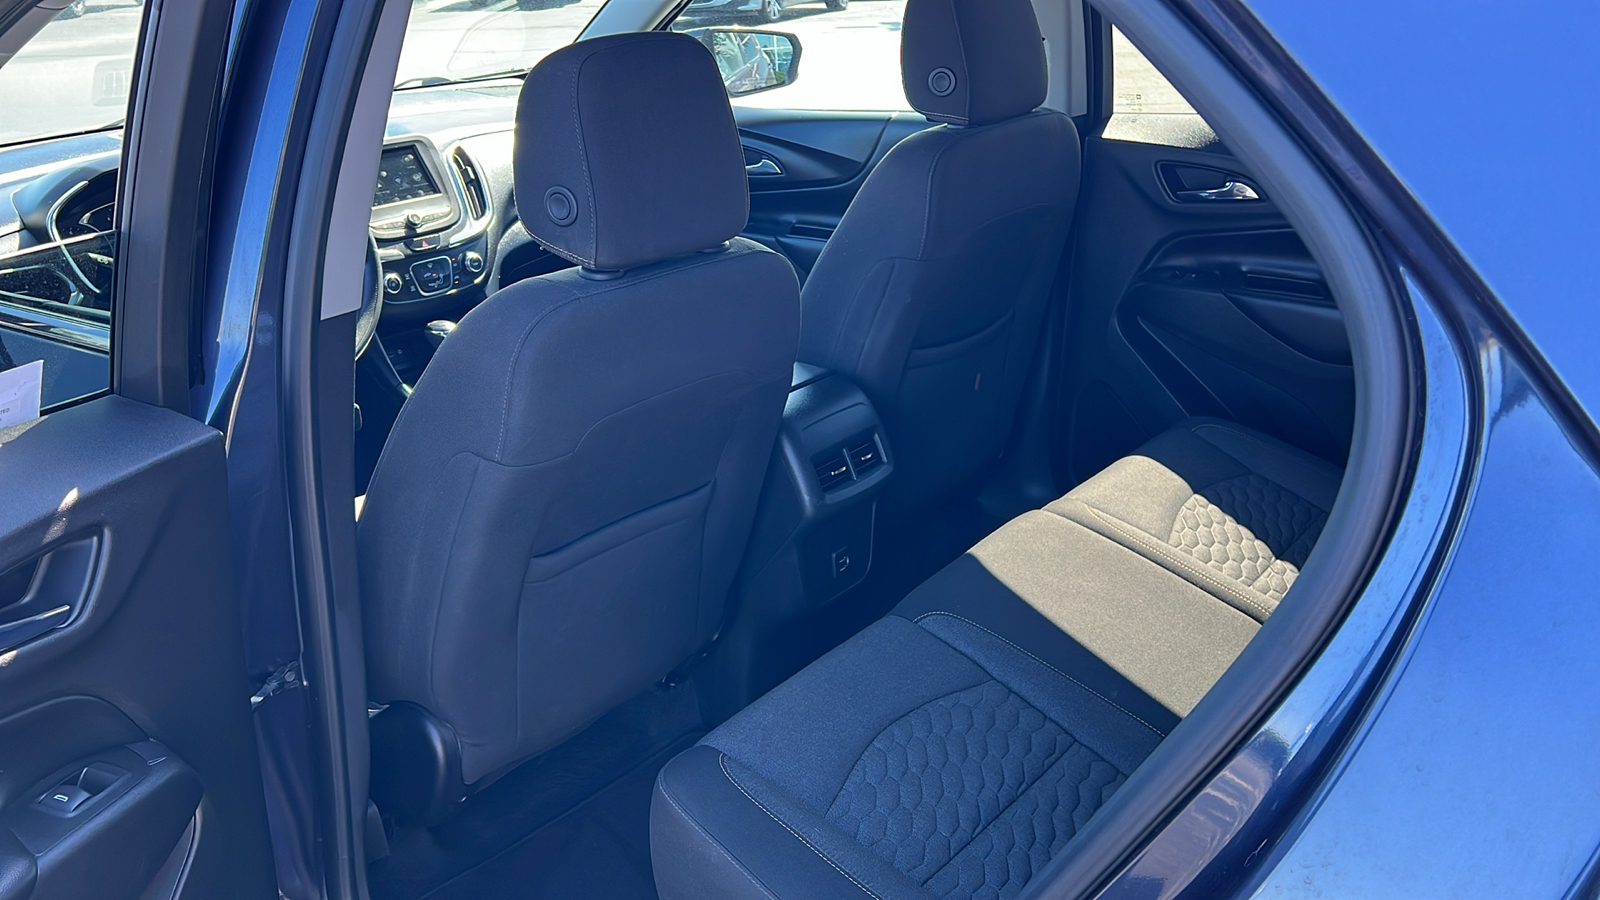 2019 Chevrolet Equinox LT 28